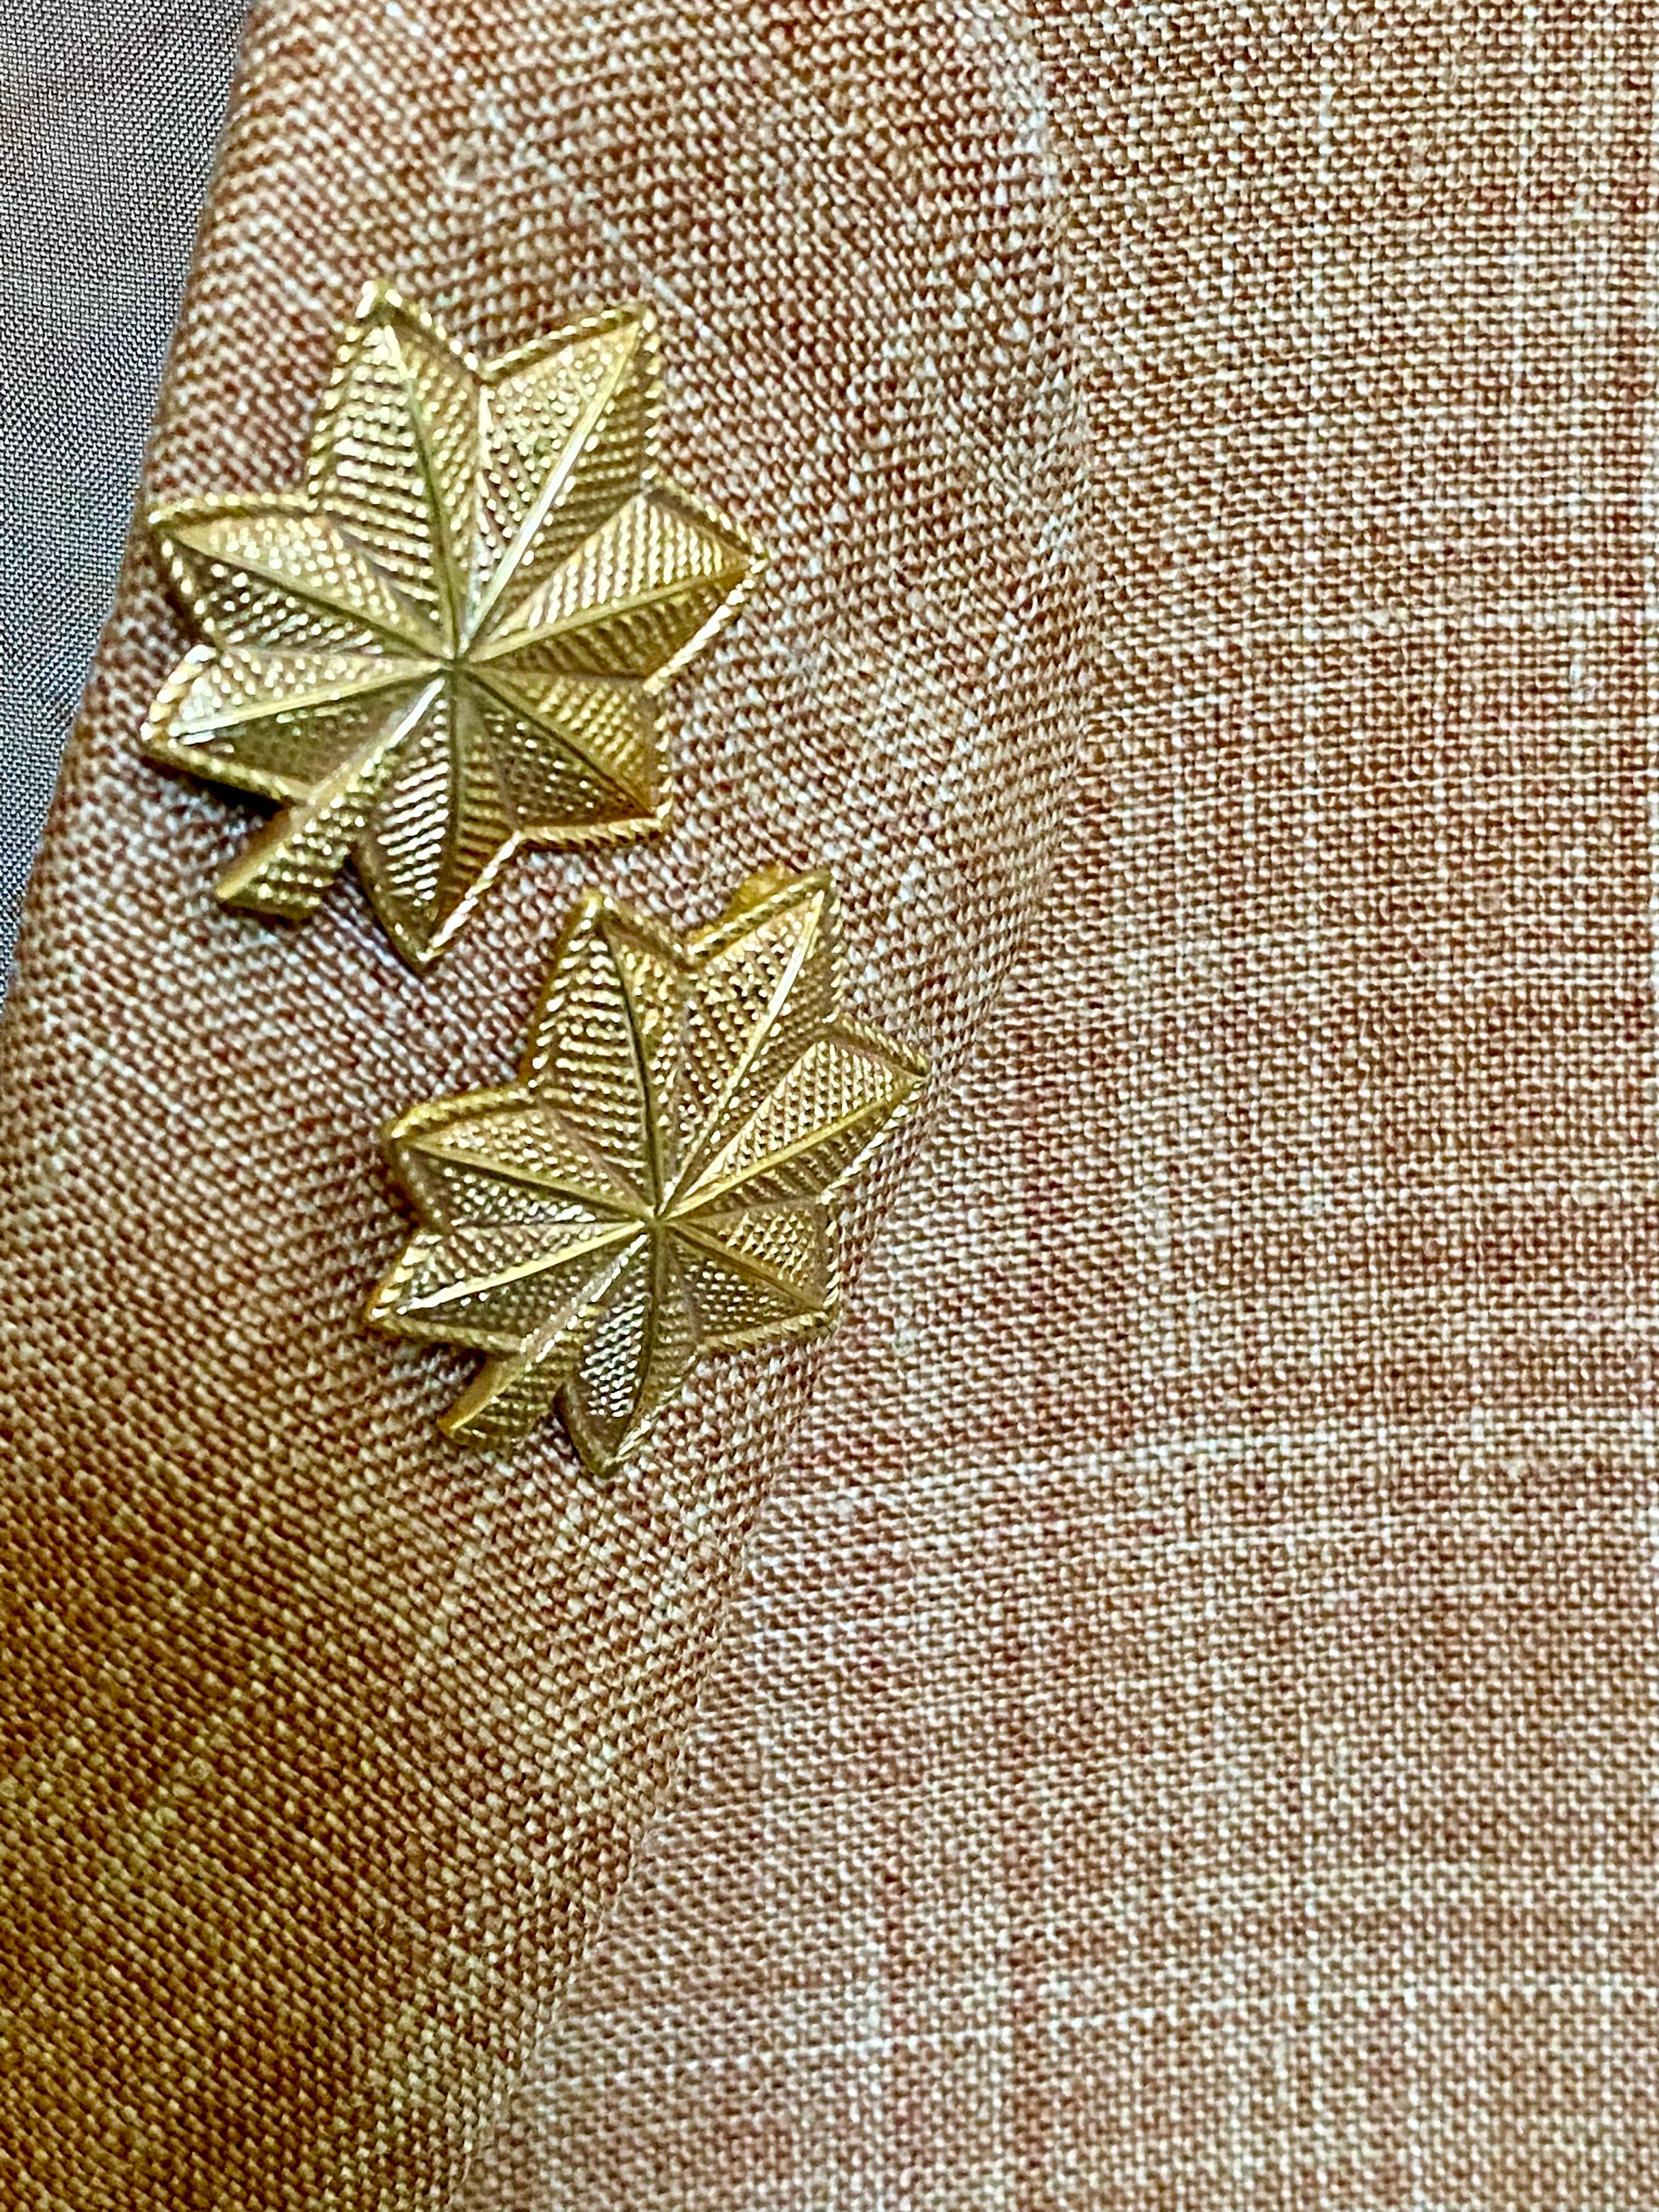 commander oak leaf